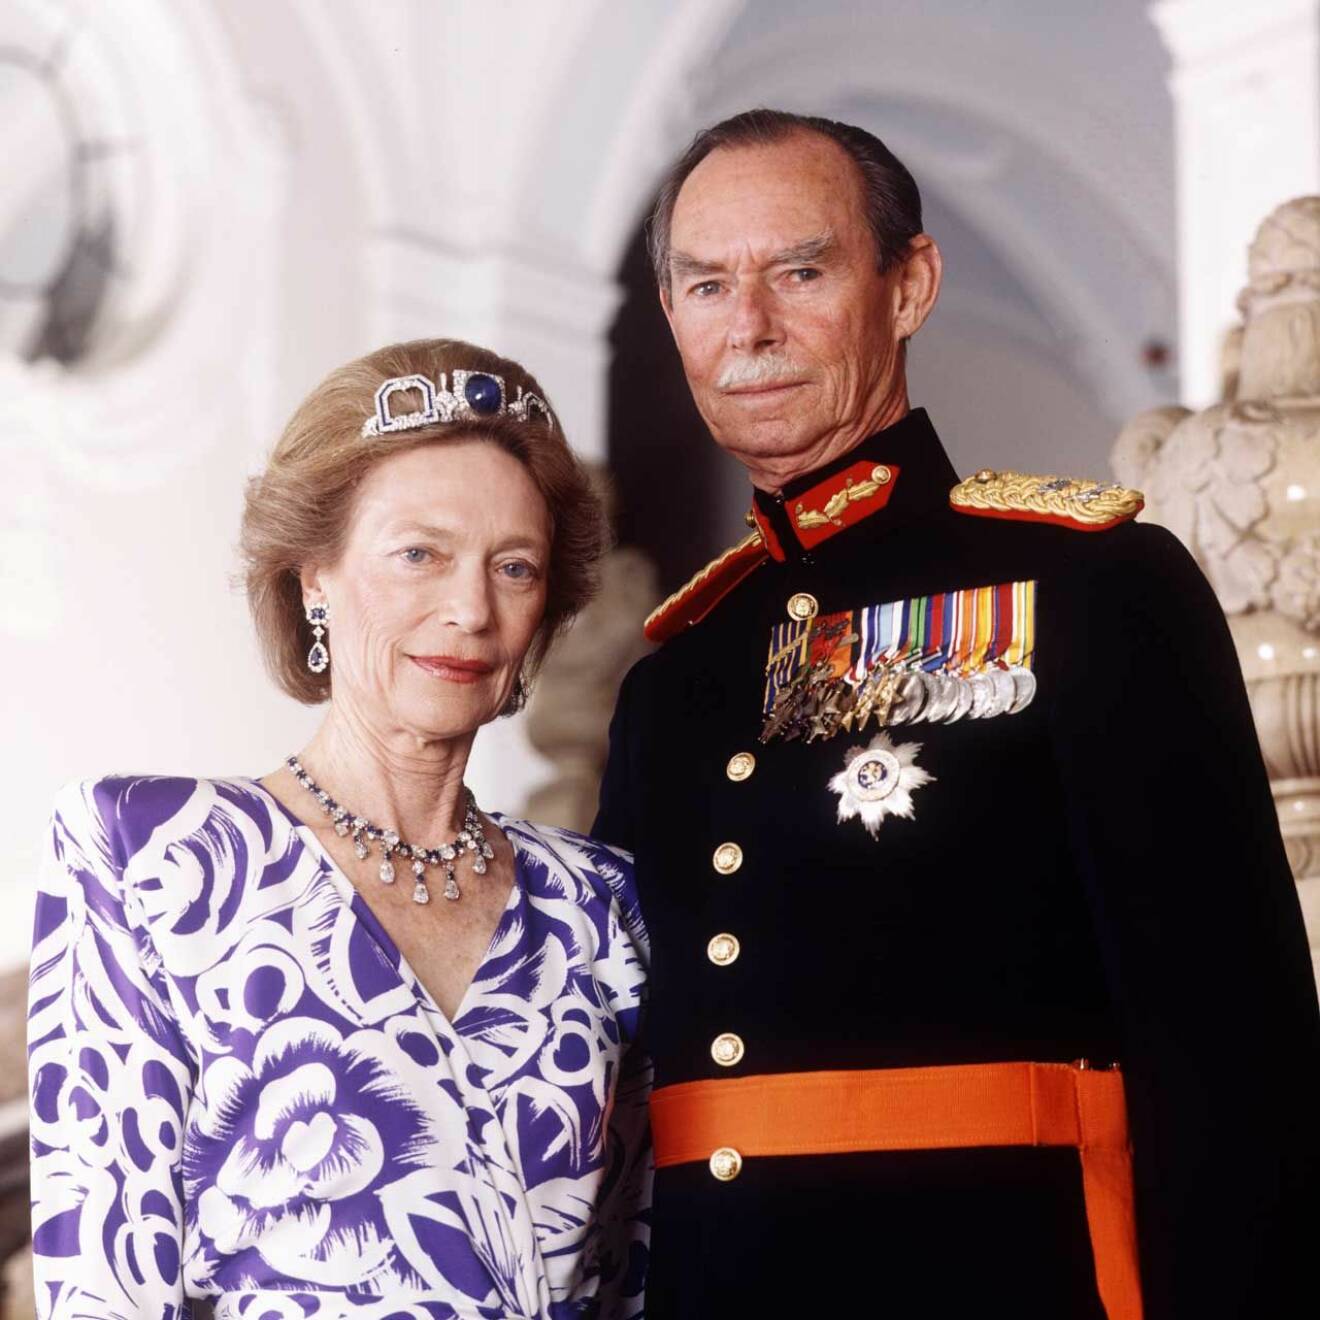 Storhertig Jean med sin hustru Josephine-Charlotte. Hon var dotter till Belgiens svenskfödda drottning Astrid och dog 2005, 77 år gammal. 